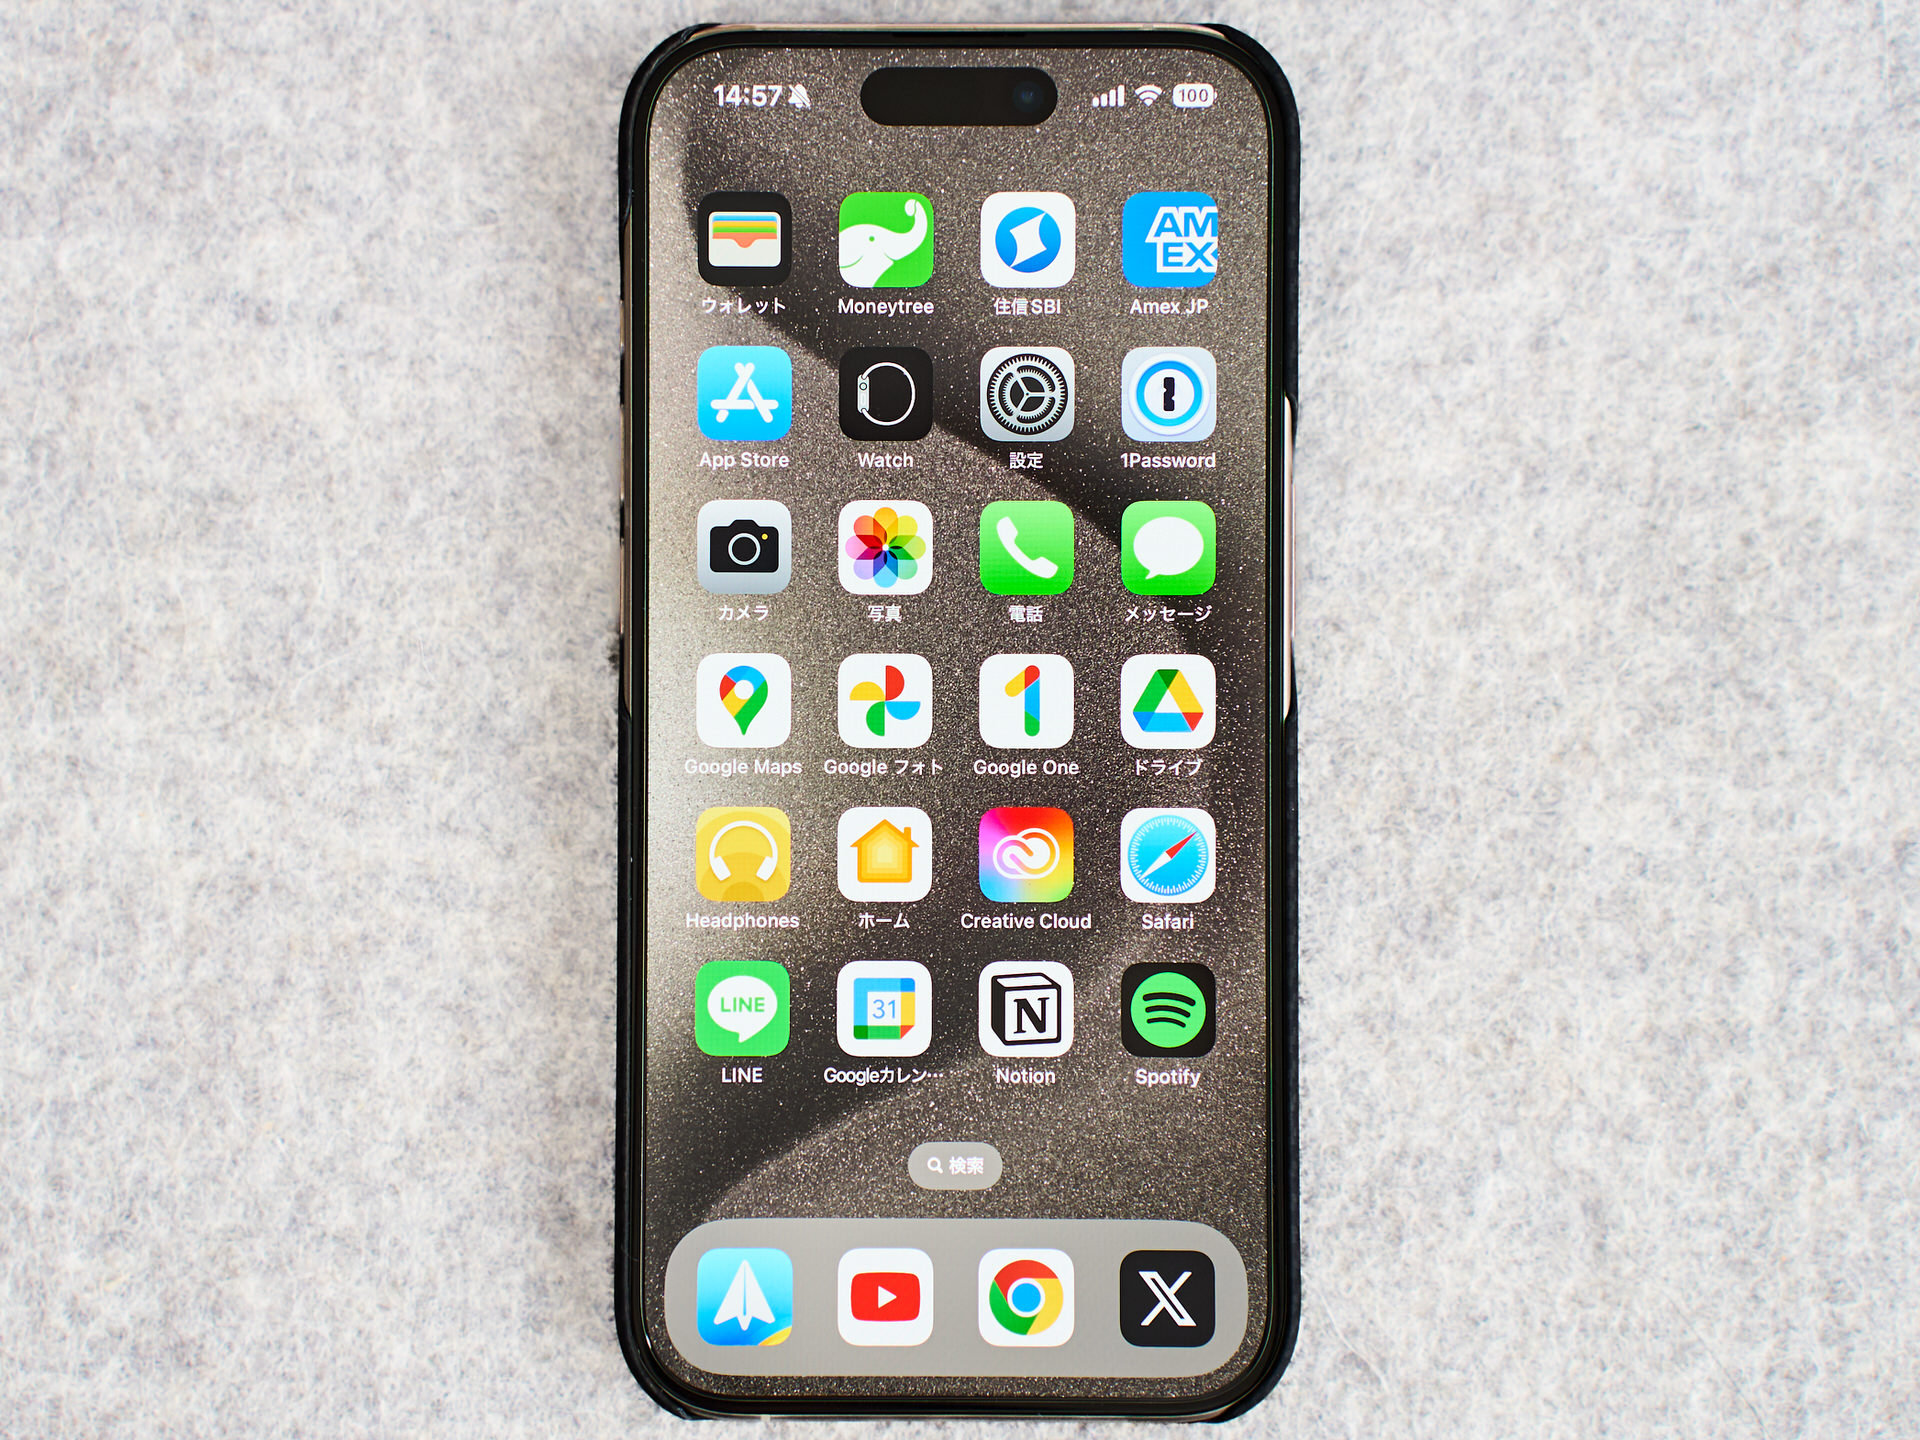 iPhone 15 Pro Pitakaケース装着 ディスプレイ